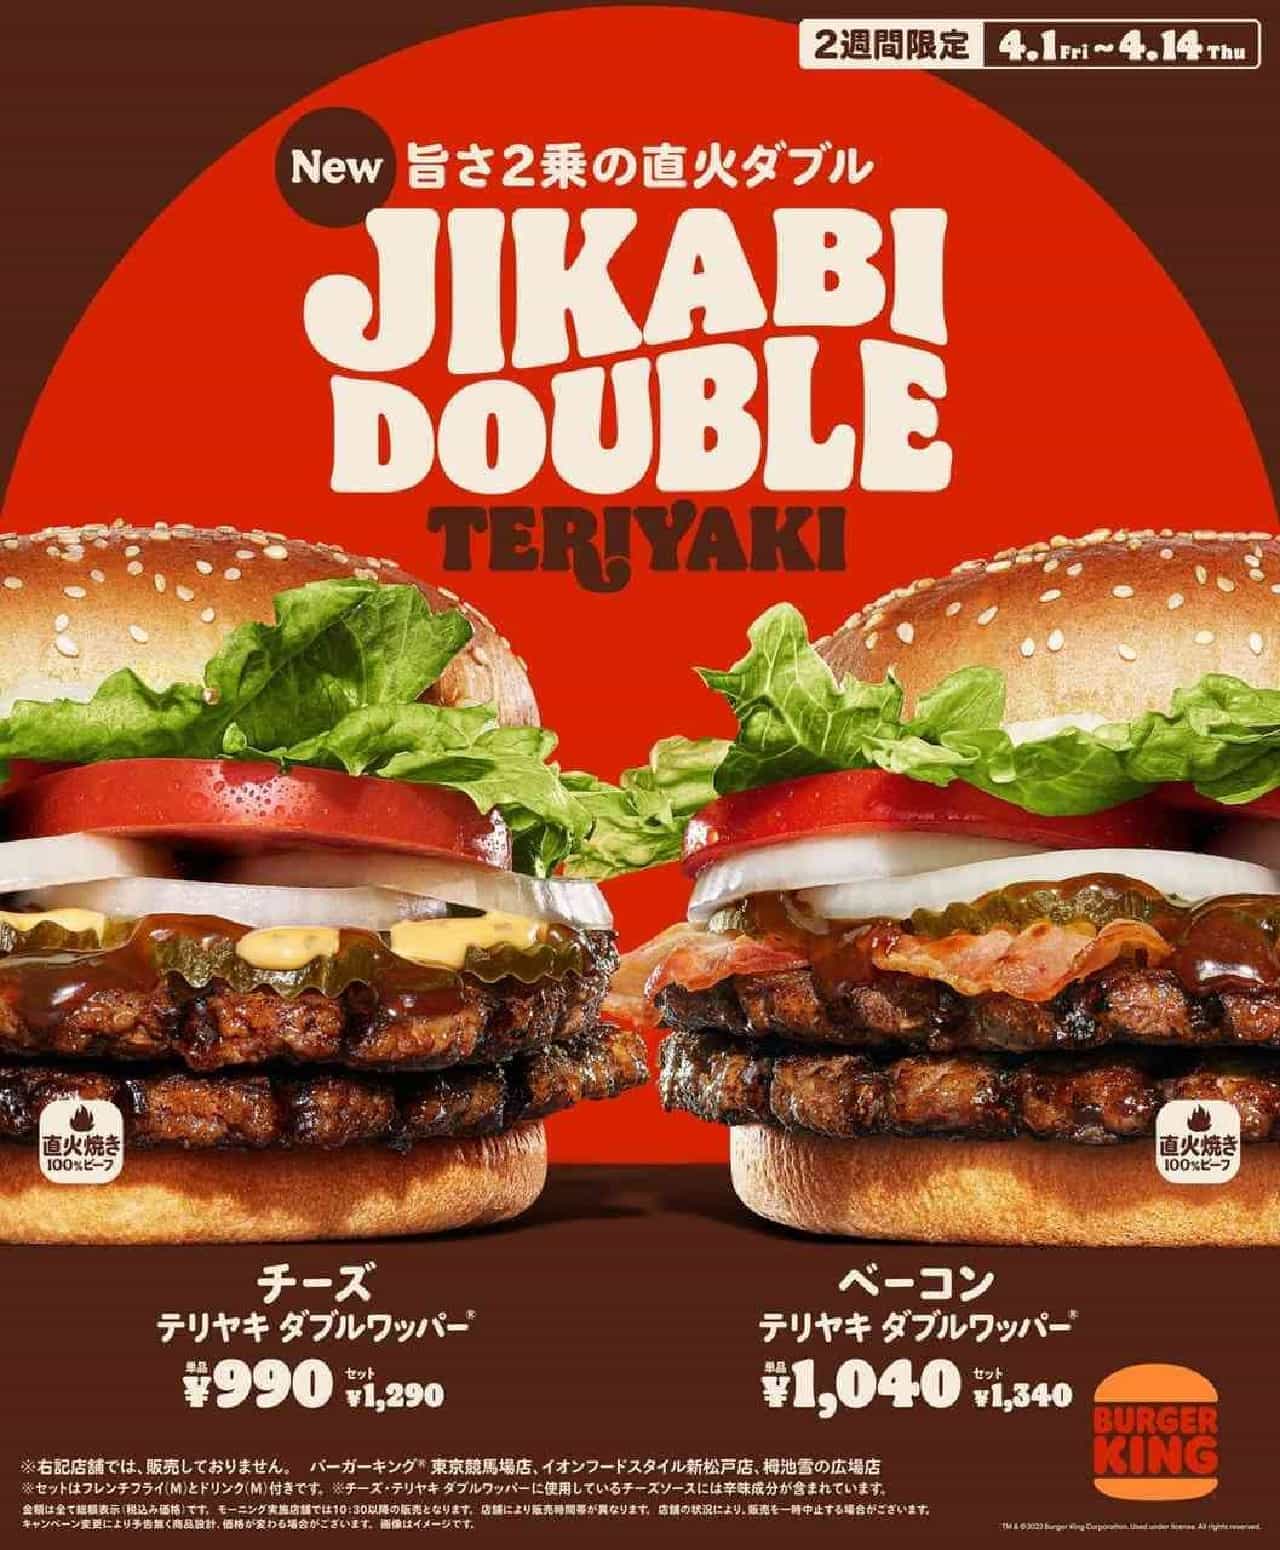 バーガーキング JIKABI DOUBLE（直火ダブル）「チーズ・テリヤキ ダブルワッパー」「ベーコン・テリヤキ ダブルワッパー」